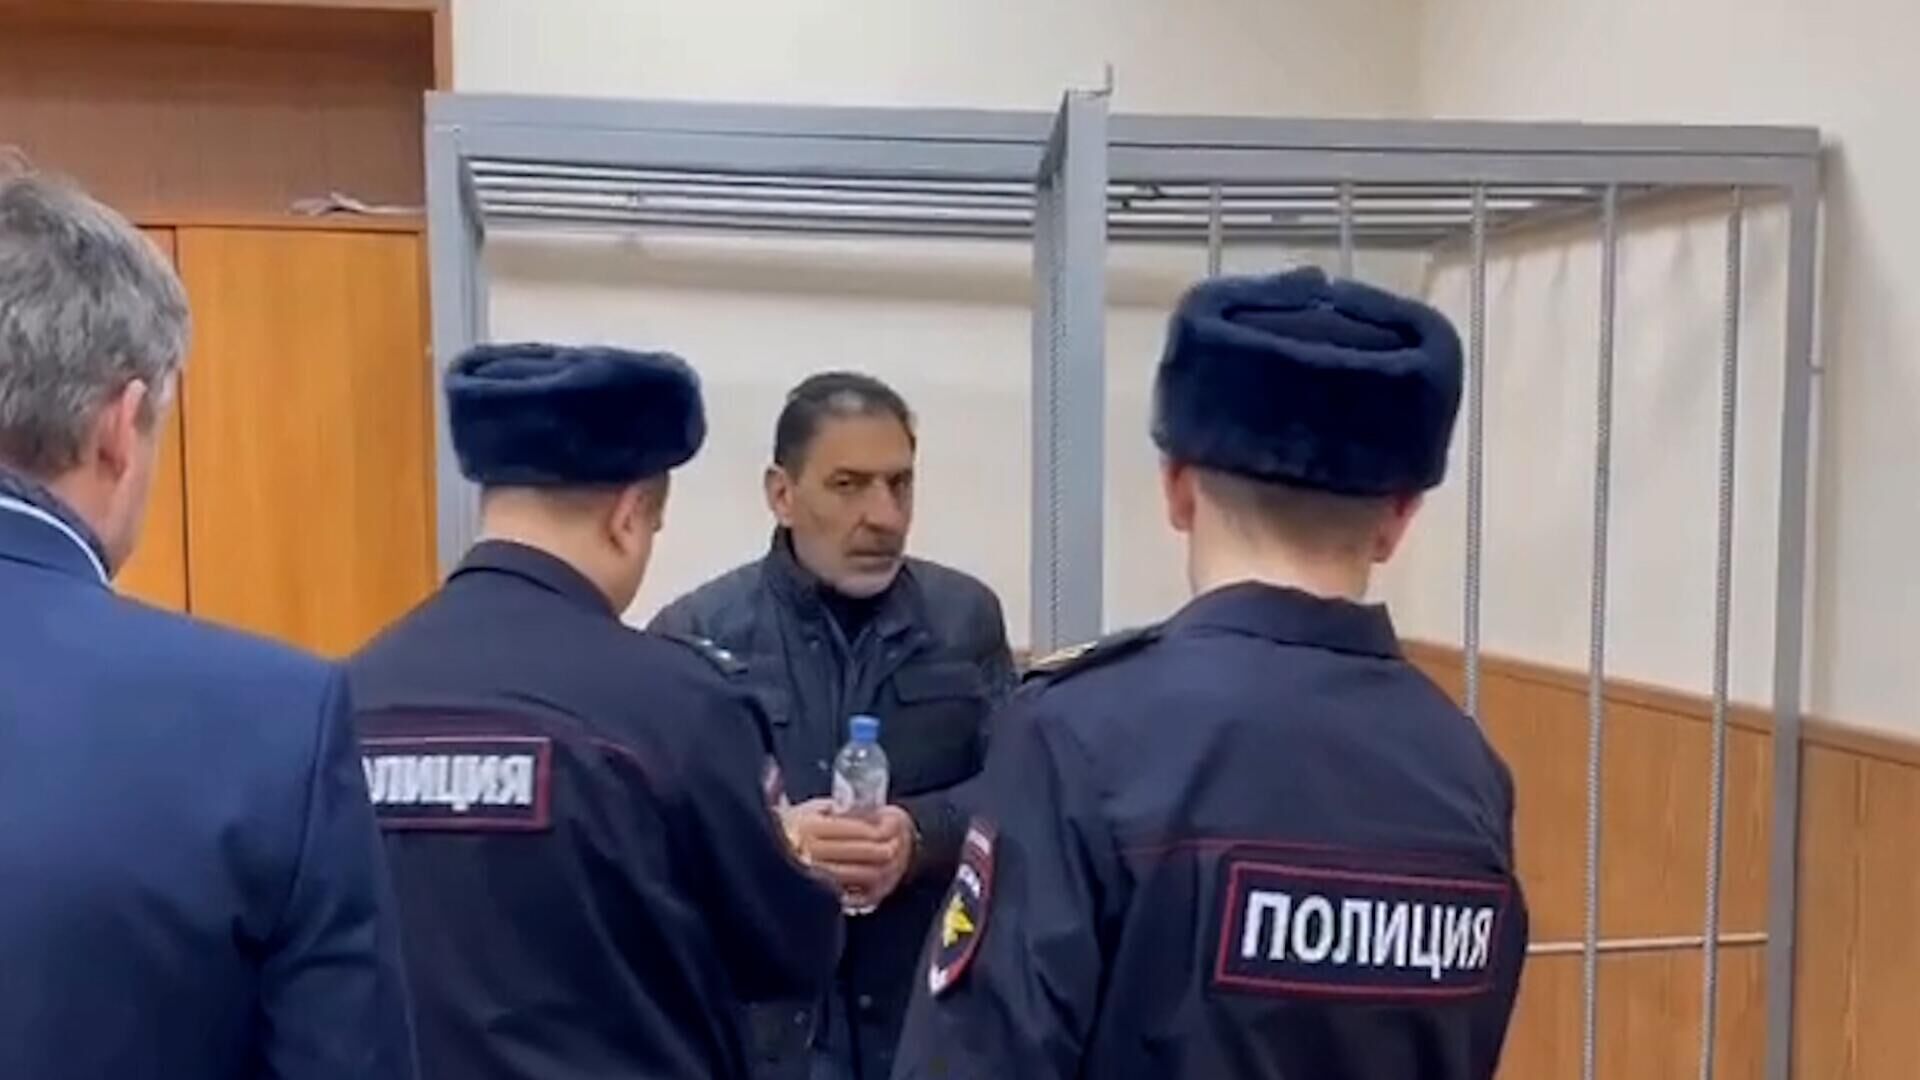 Адвокат мирзоева попросил оставить. Ихтияр Мирзоев Кострома. Суд арест. Депутат Мирзоев. Фотография под арестом.